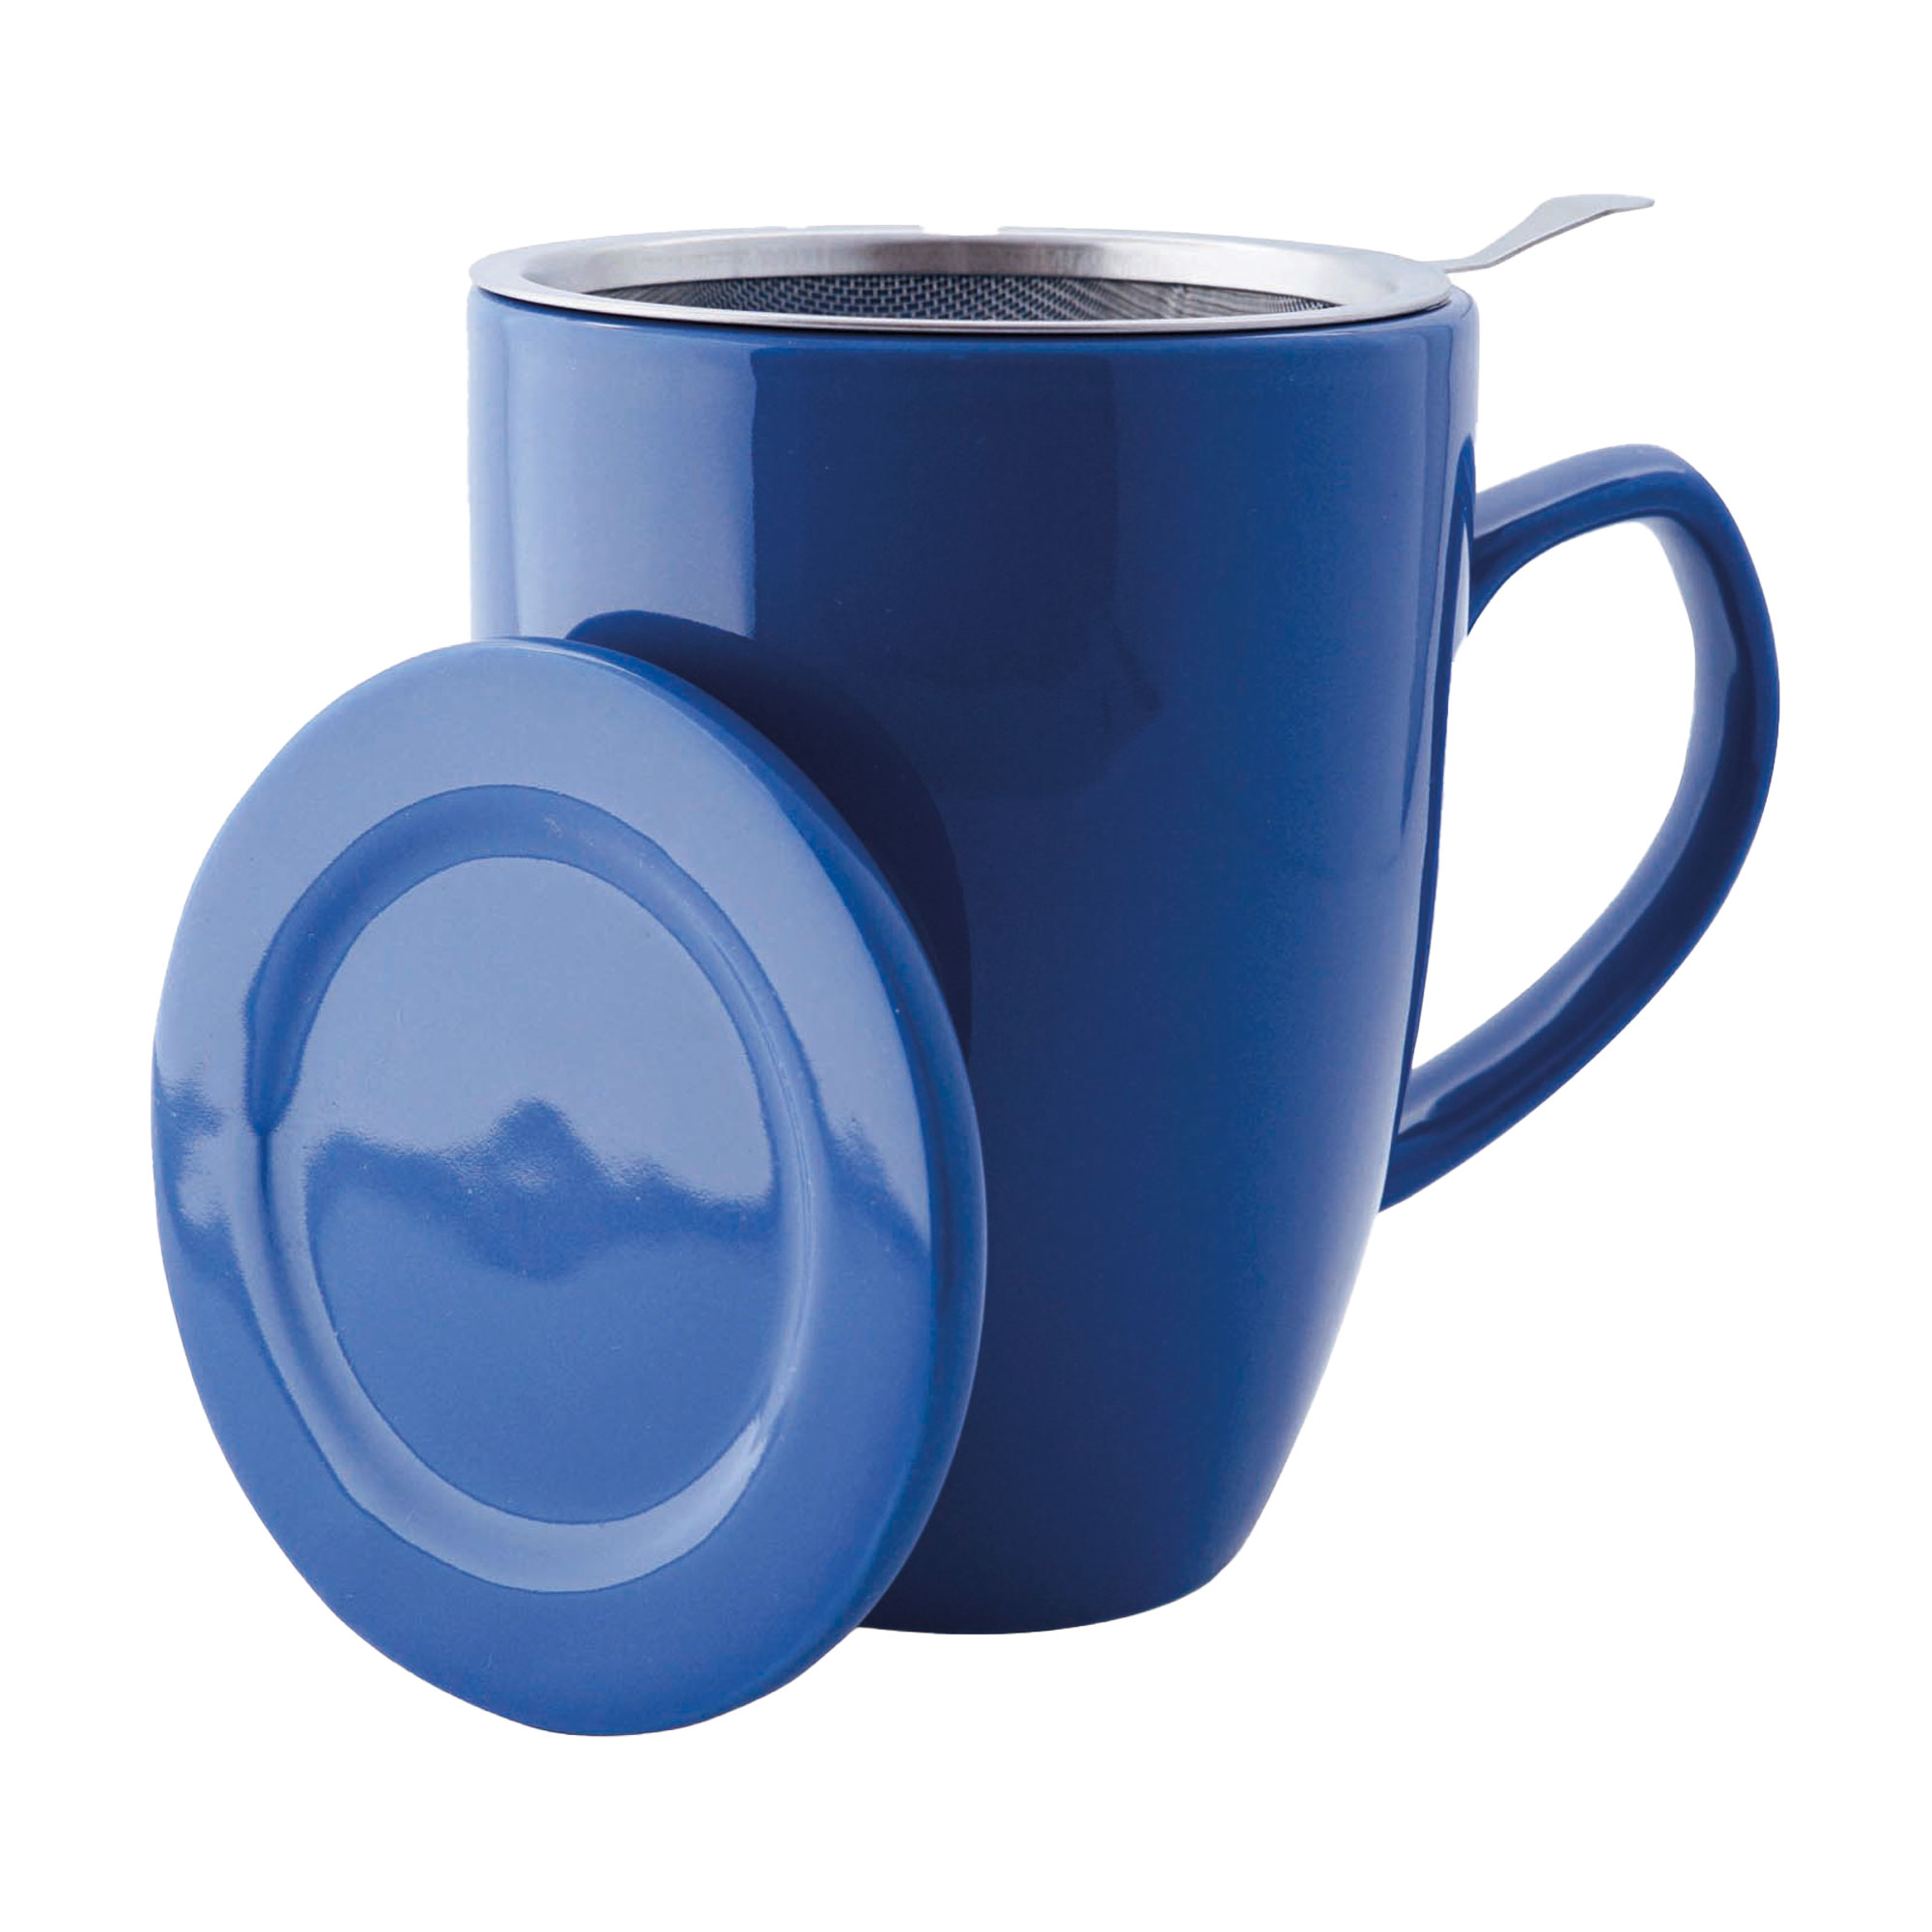 Teetasse mit Siebeinsatz und Deckel. Farbe: dunkelblau. Mit 0,35 Liter Fassungsvermögen.